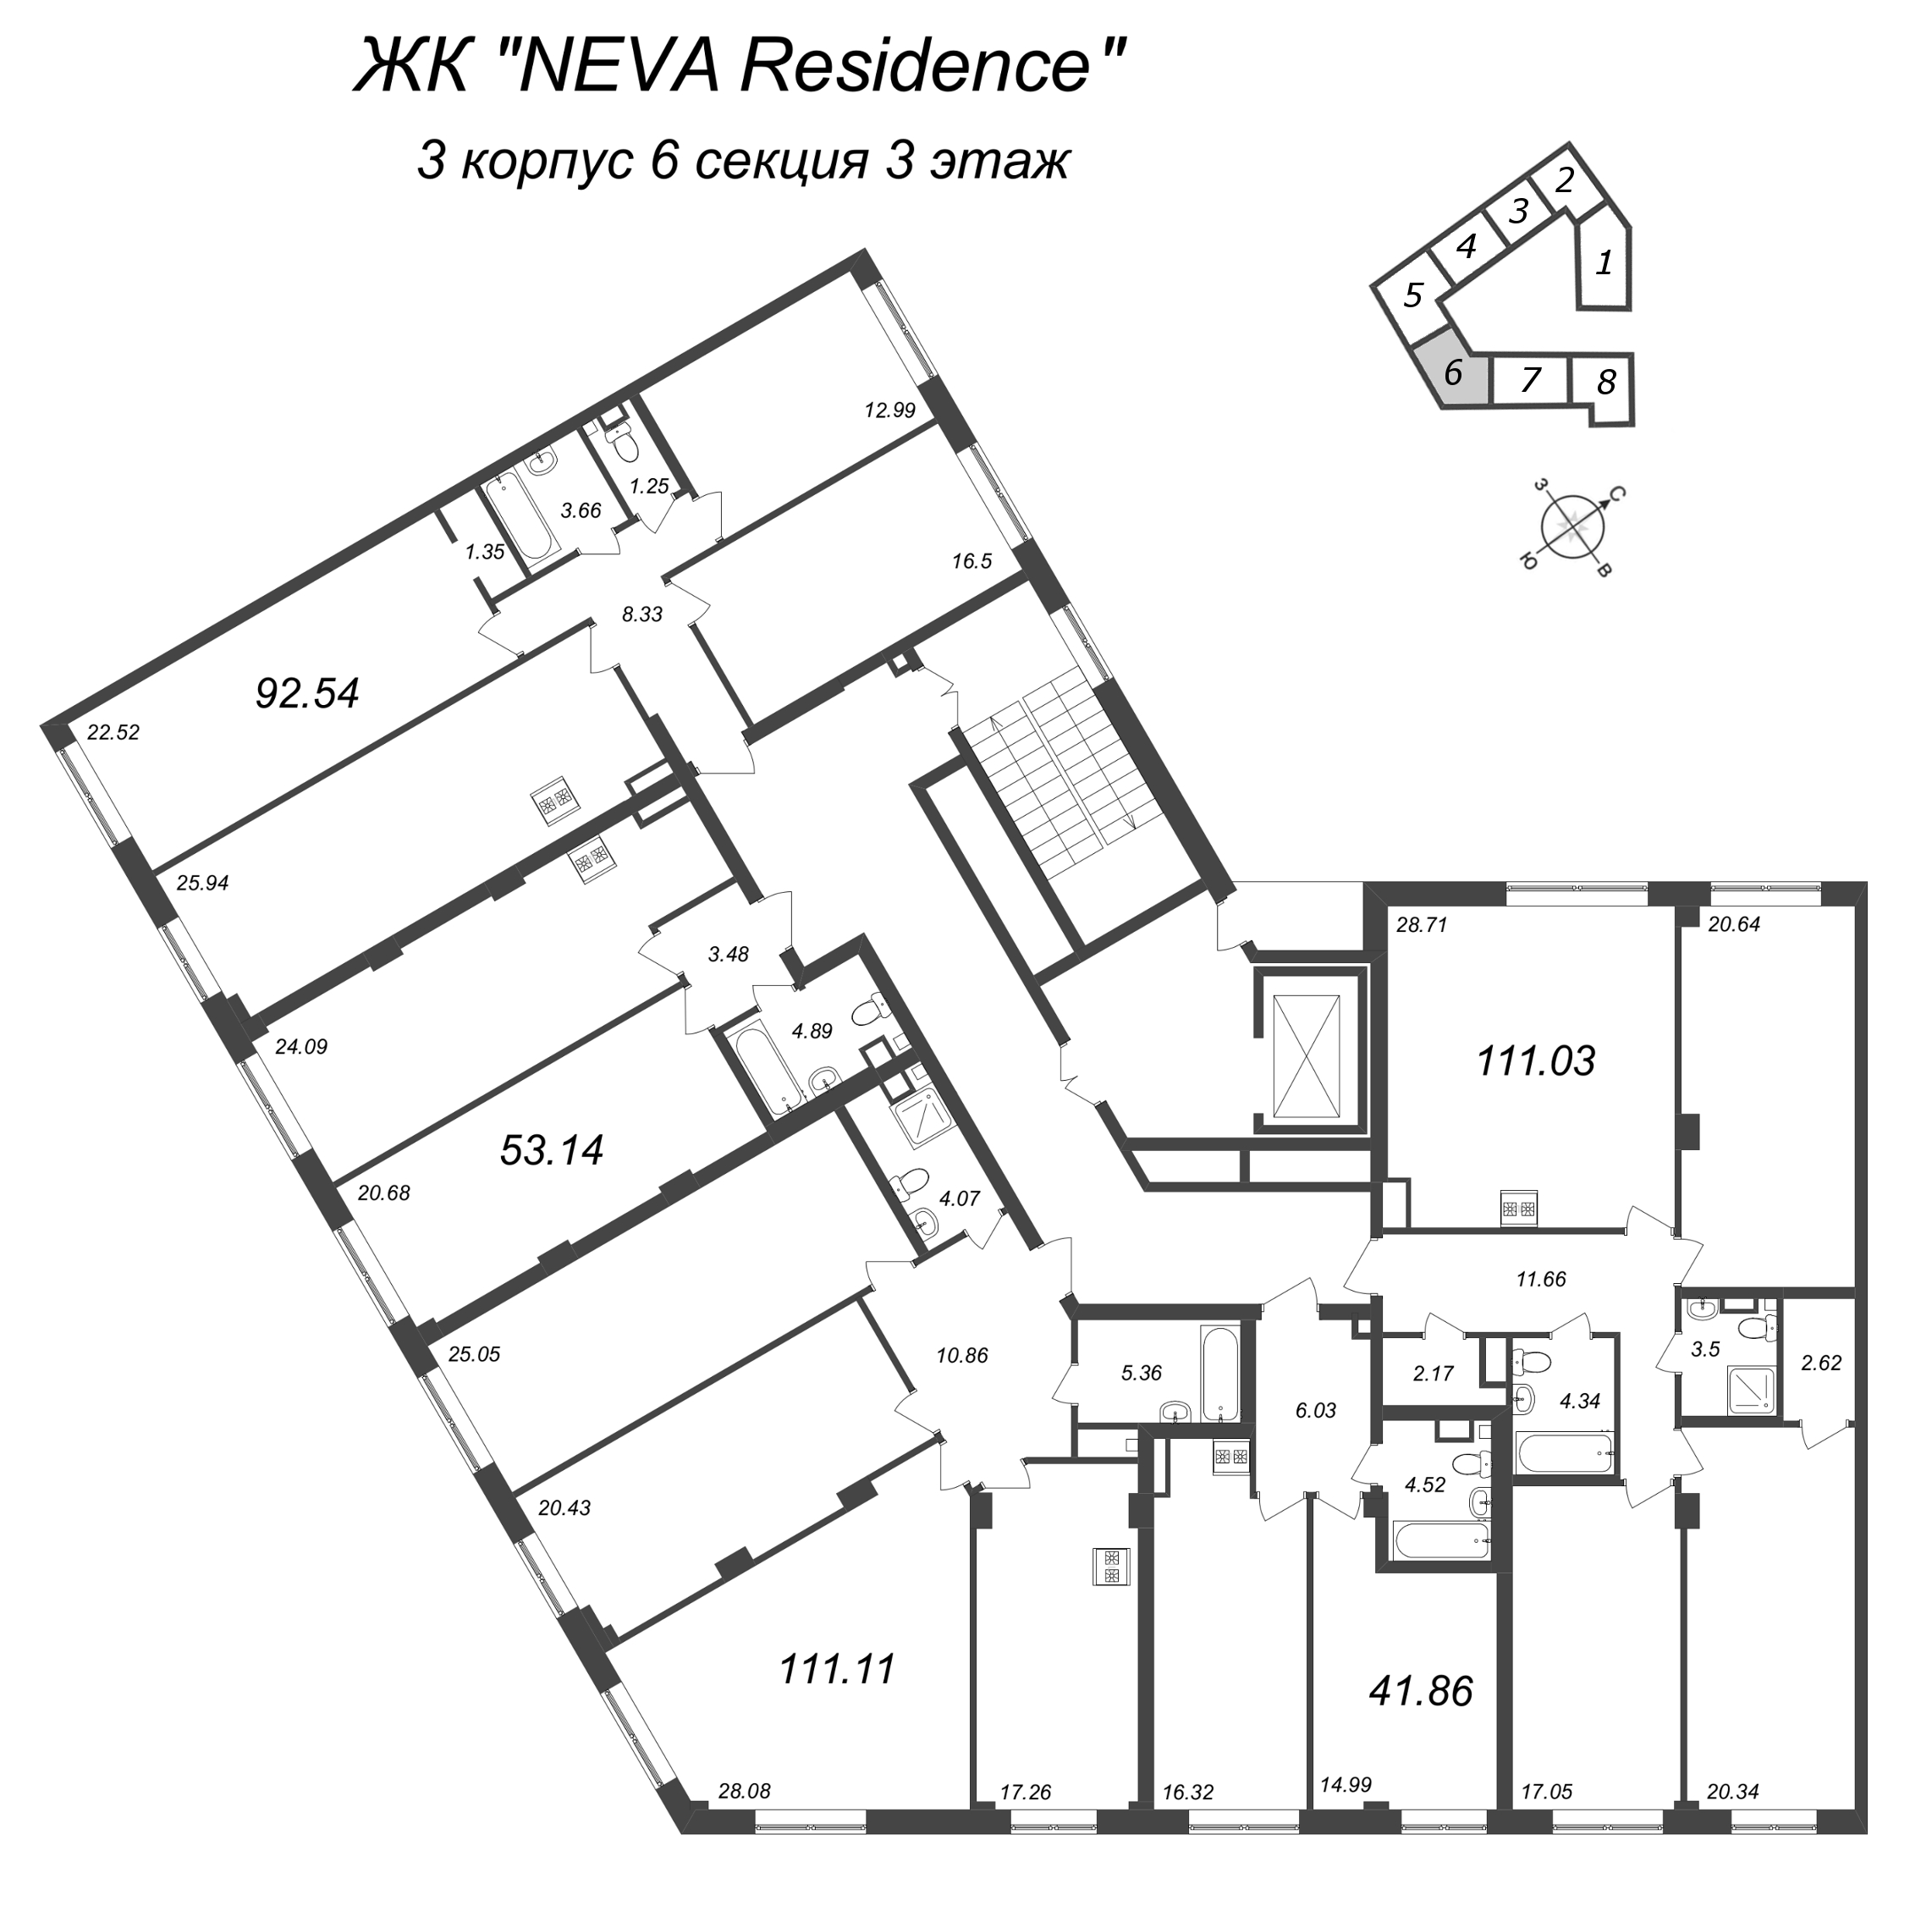 4-комнатная (Евро) квартира, 92.54 м² в ЖК "Neva Residence" - планировка этажа